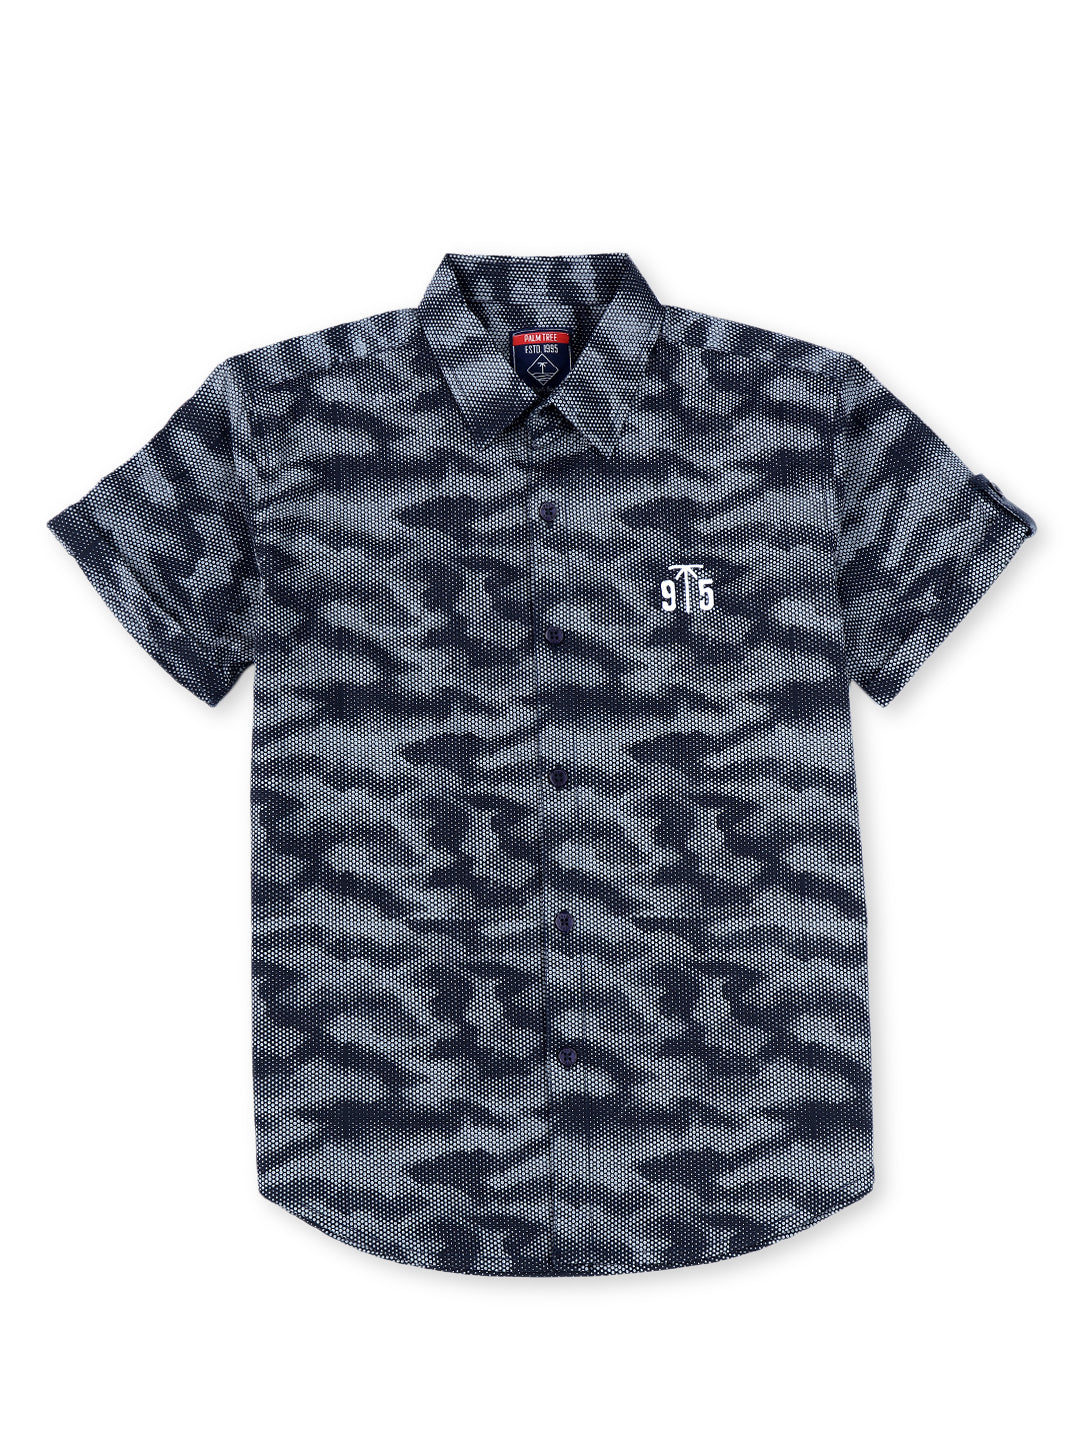 Boys Navy Blue Cotton Printed Shirt